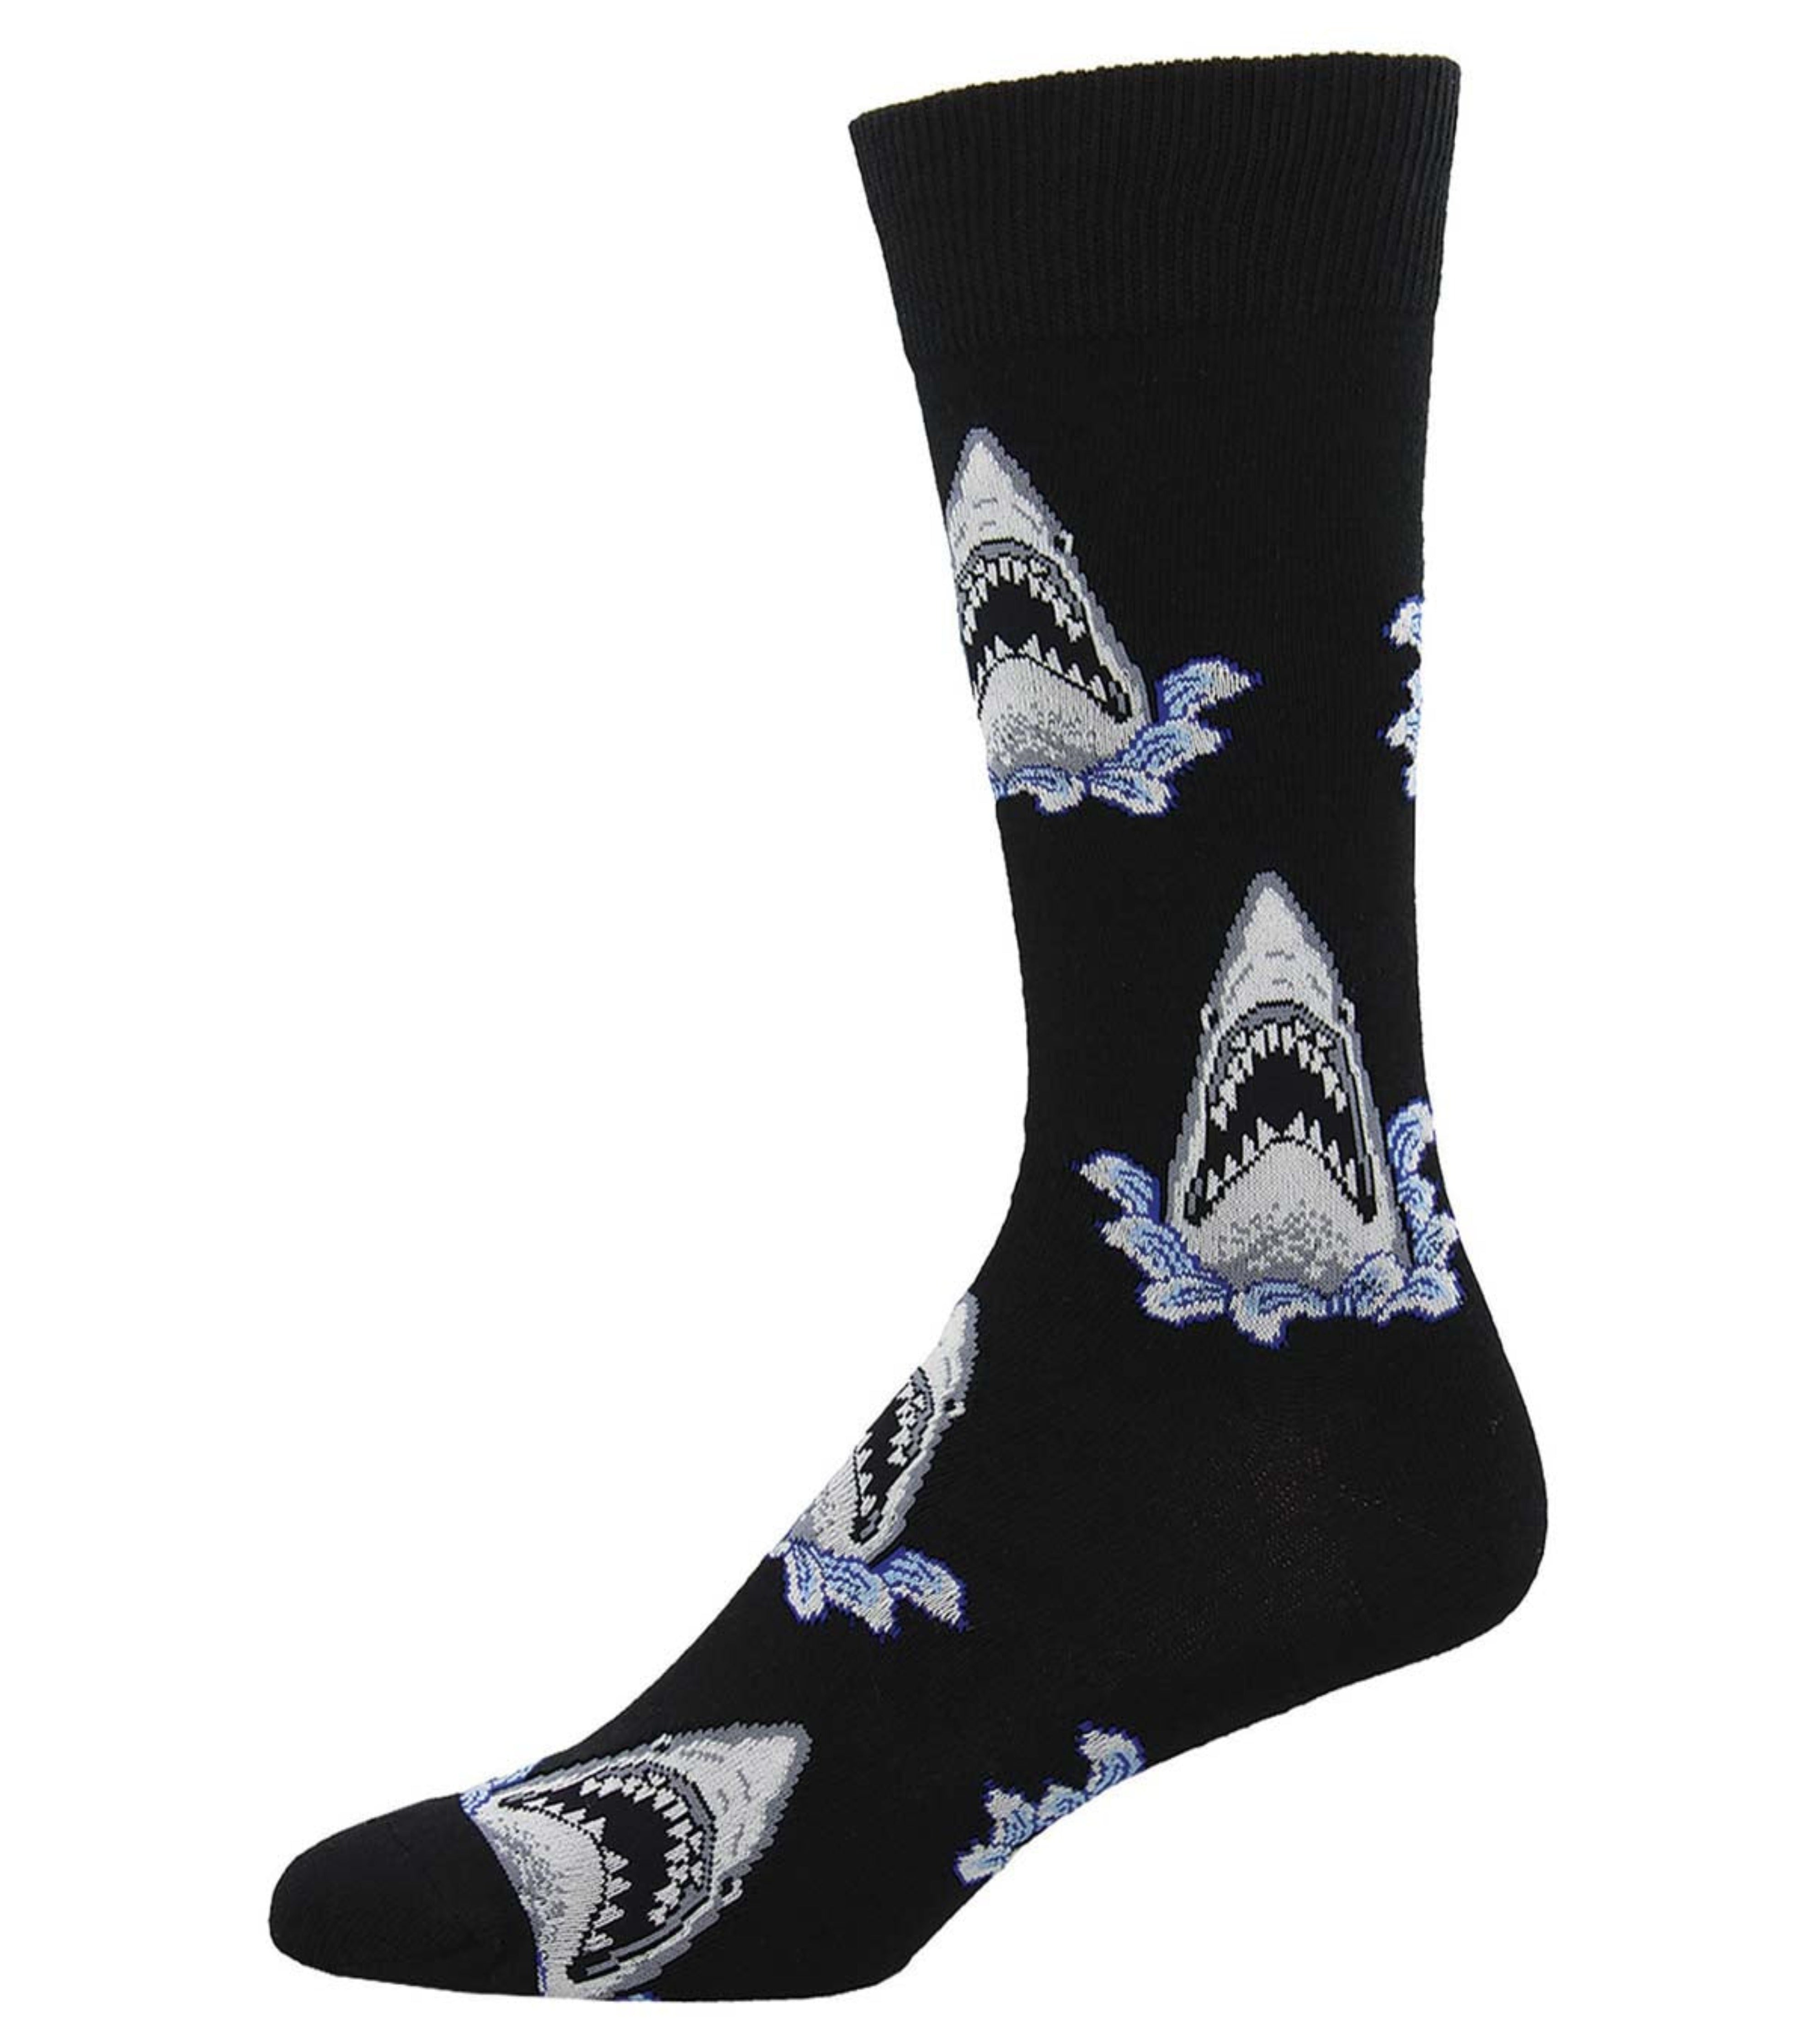 Men's "Shark Attack" Socks